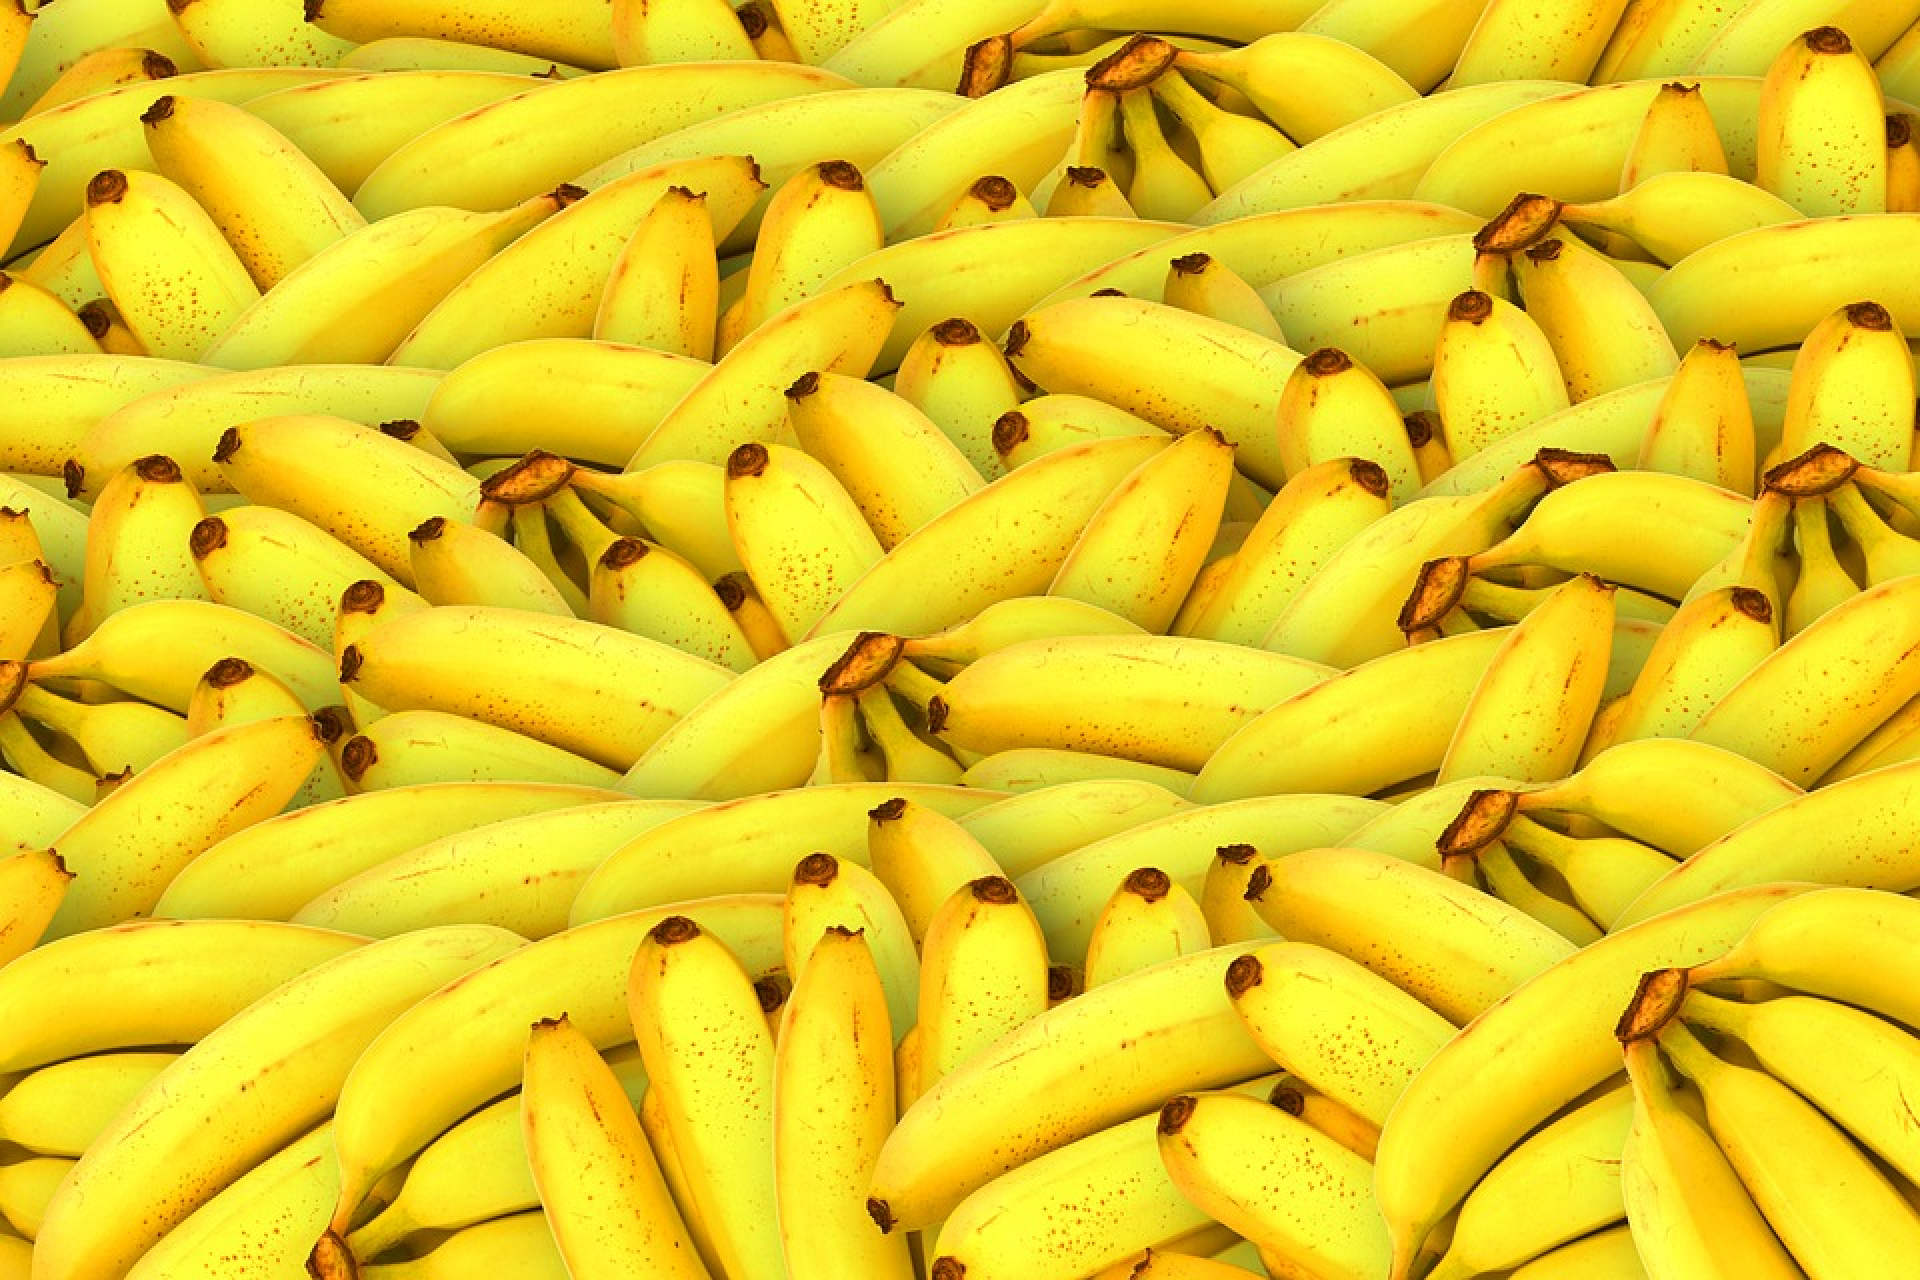 Ne menjünk a boltba banánért! – Szakítsunk le egyet otthon a fáról!